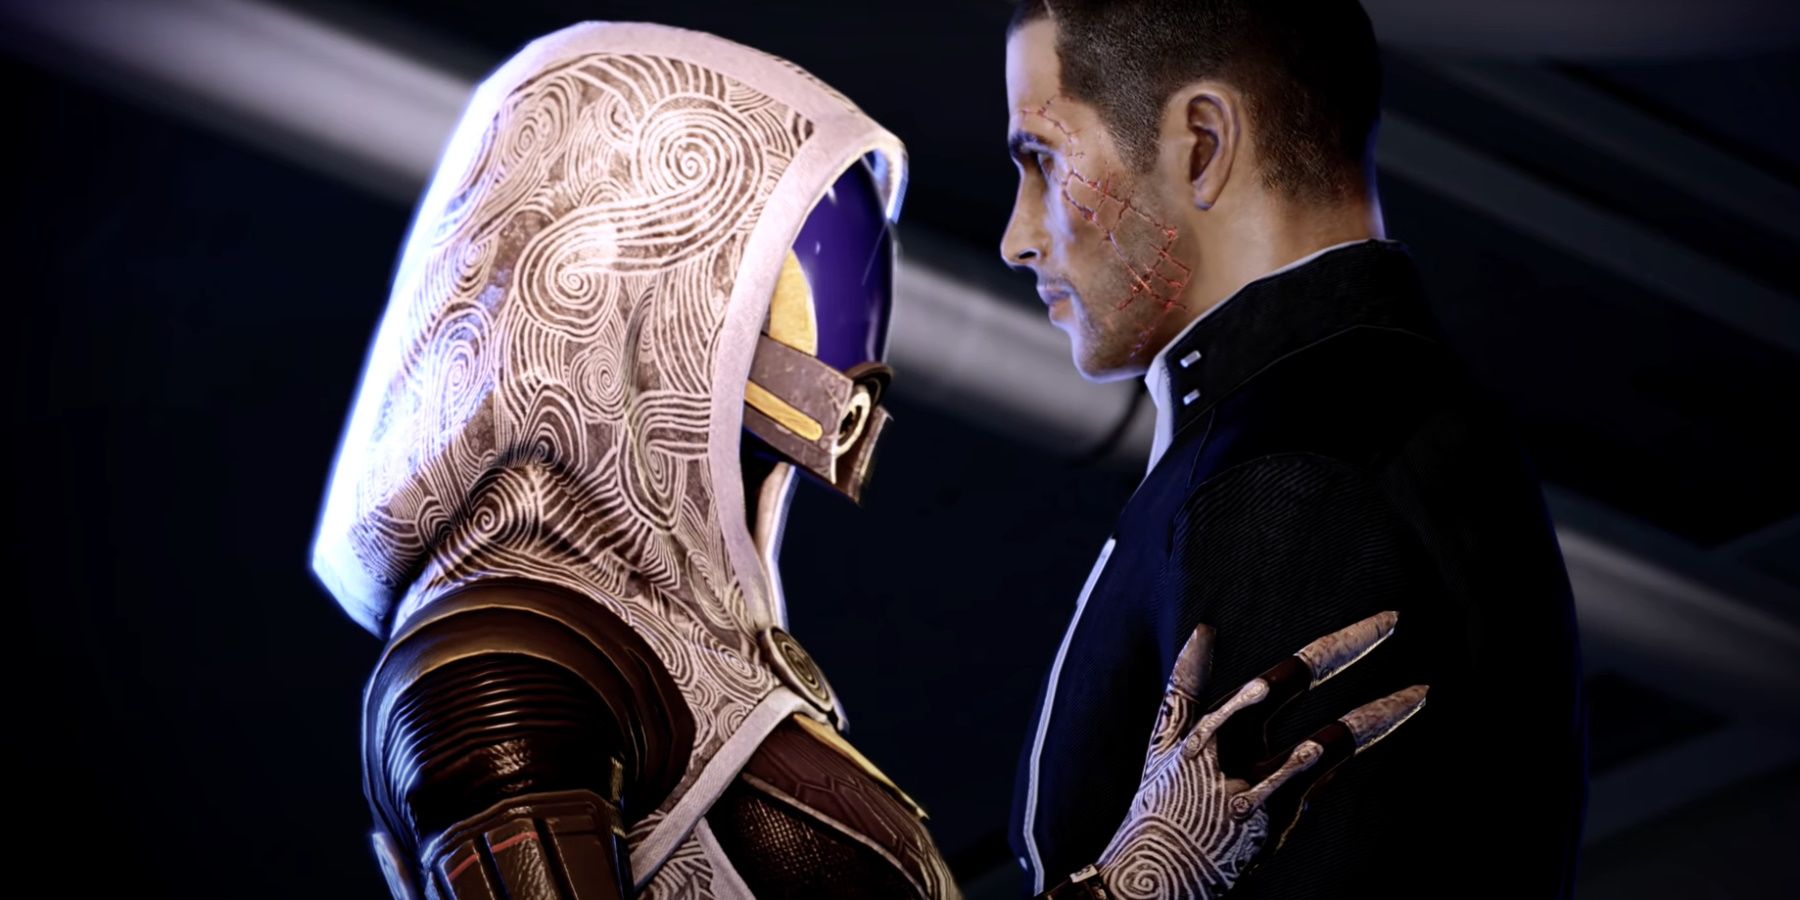 Mass Effect 2: Tali Romance Guide